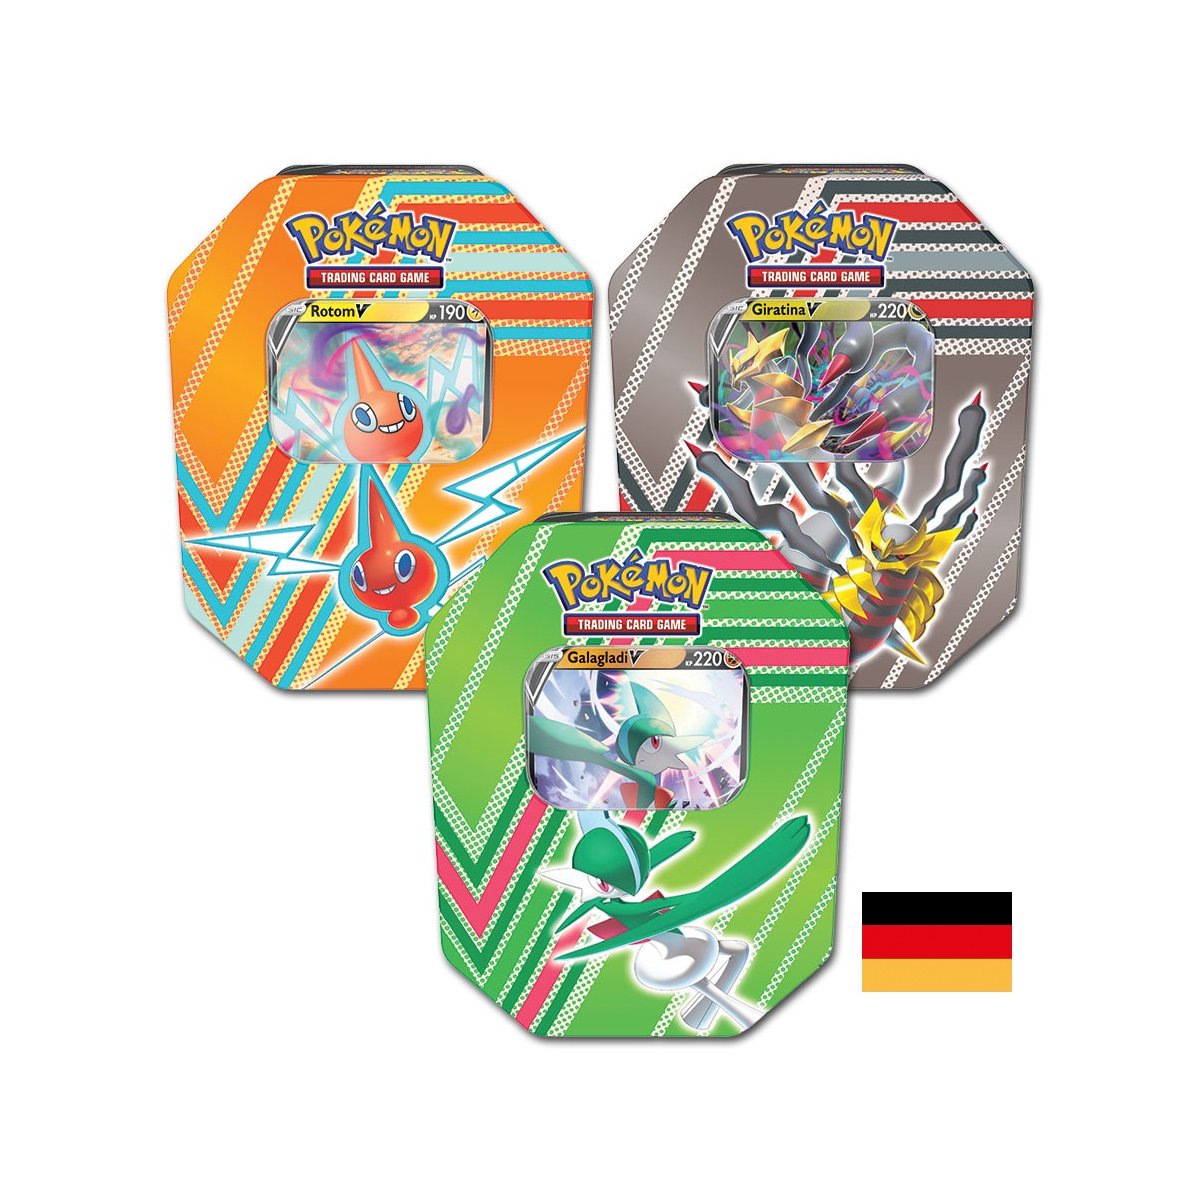 Alle 3 Pokemon Herbst Tin Boxen 2022 (deutsch)